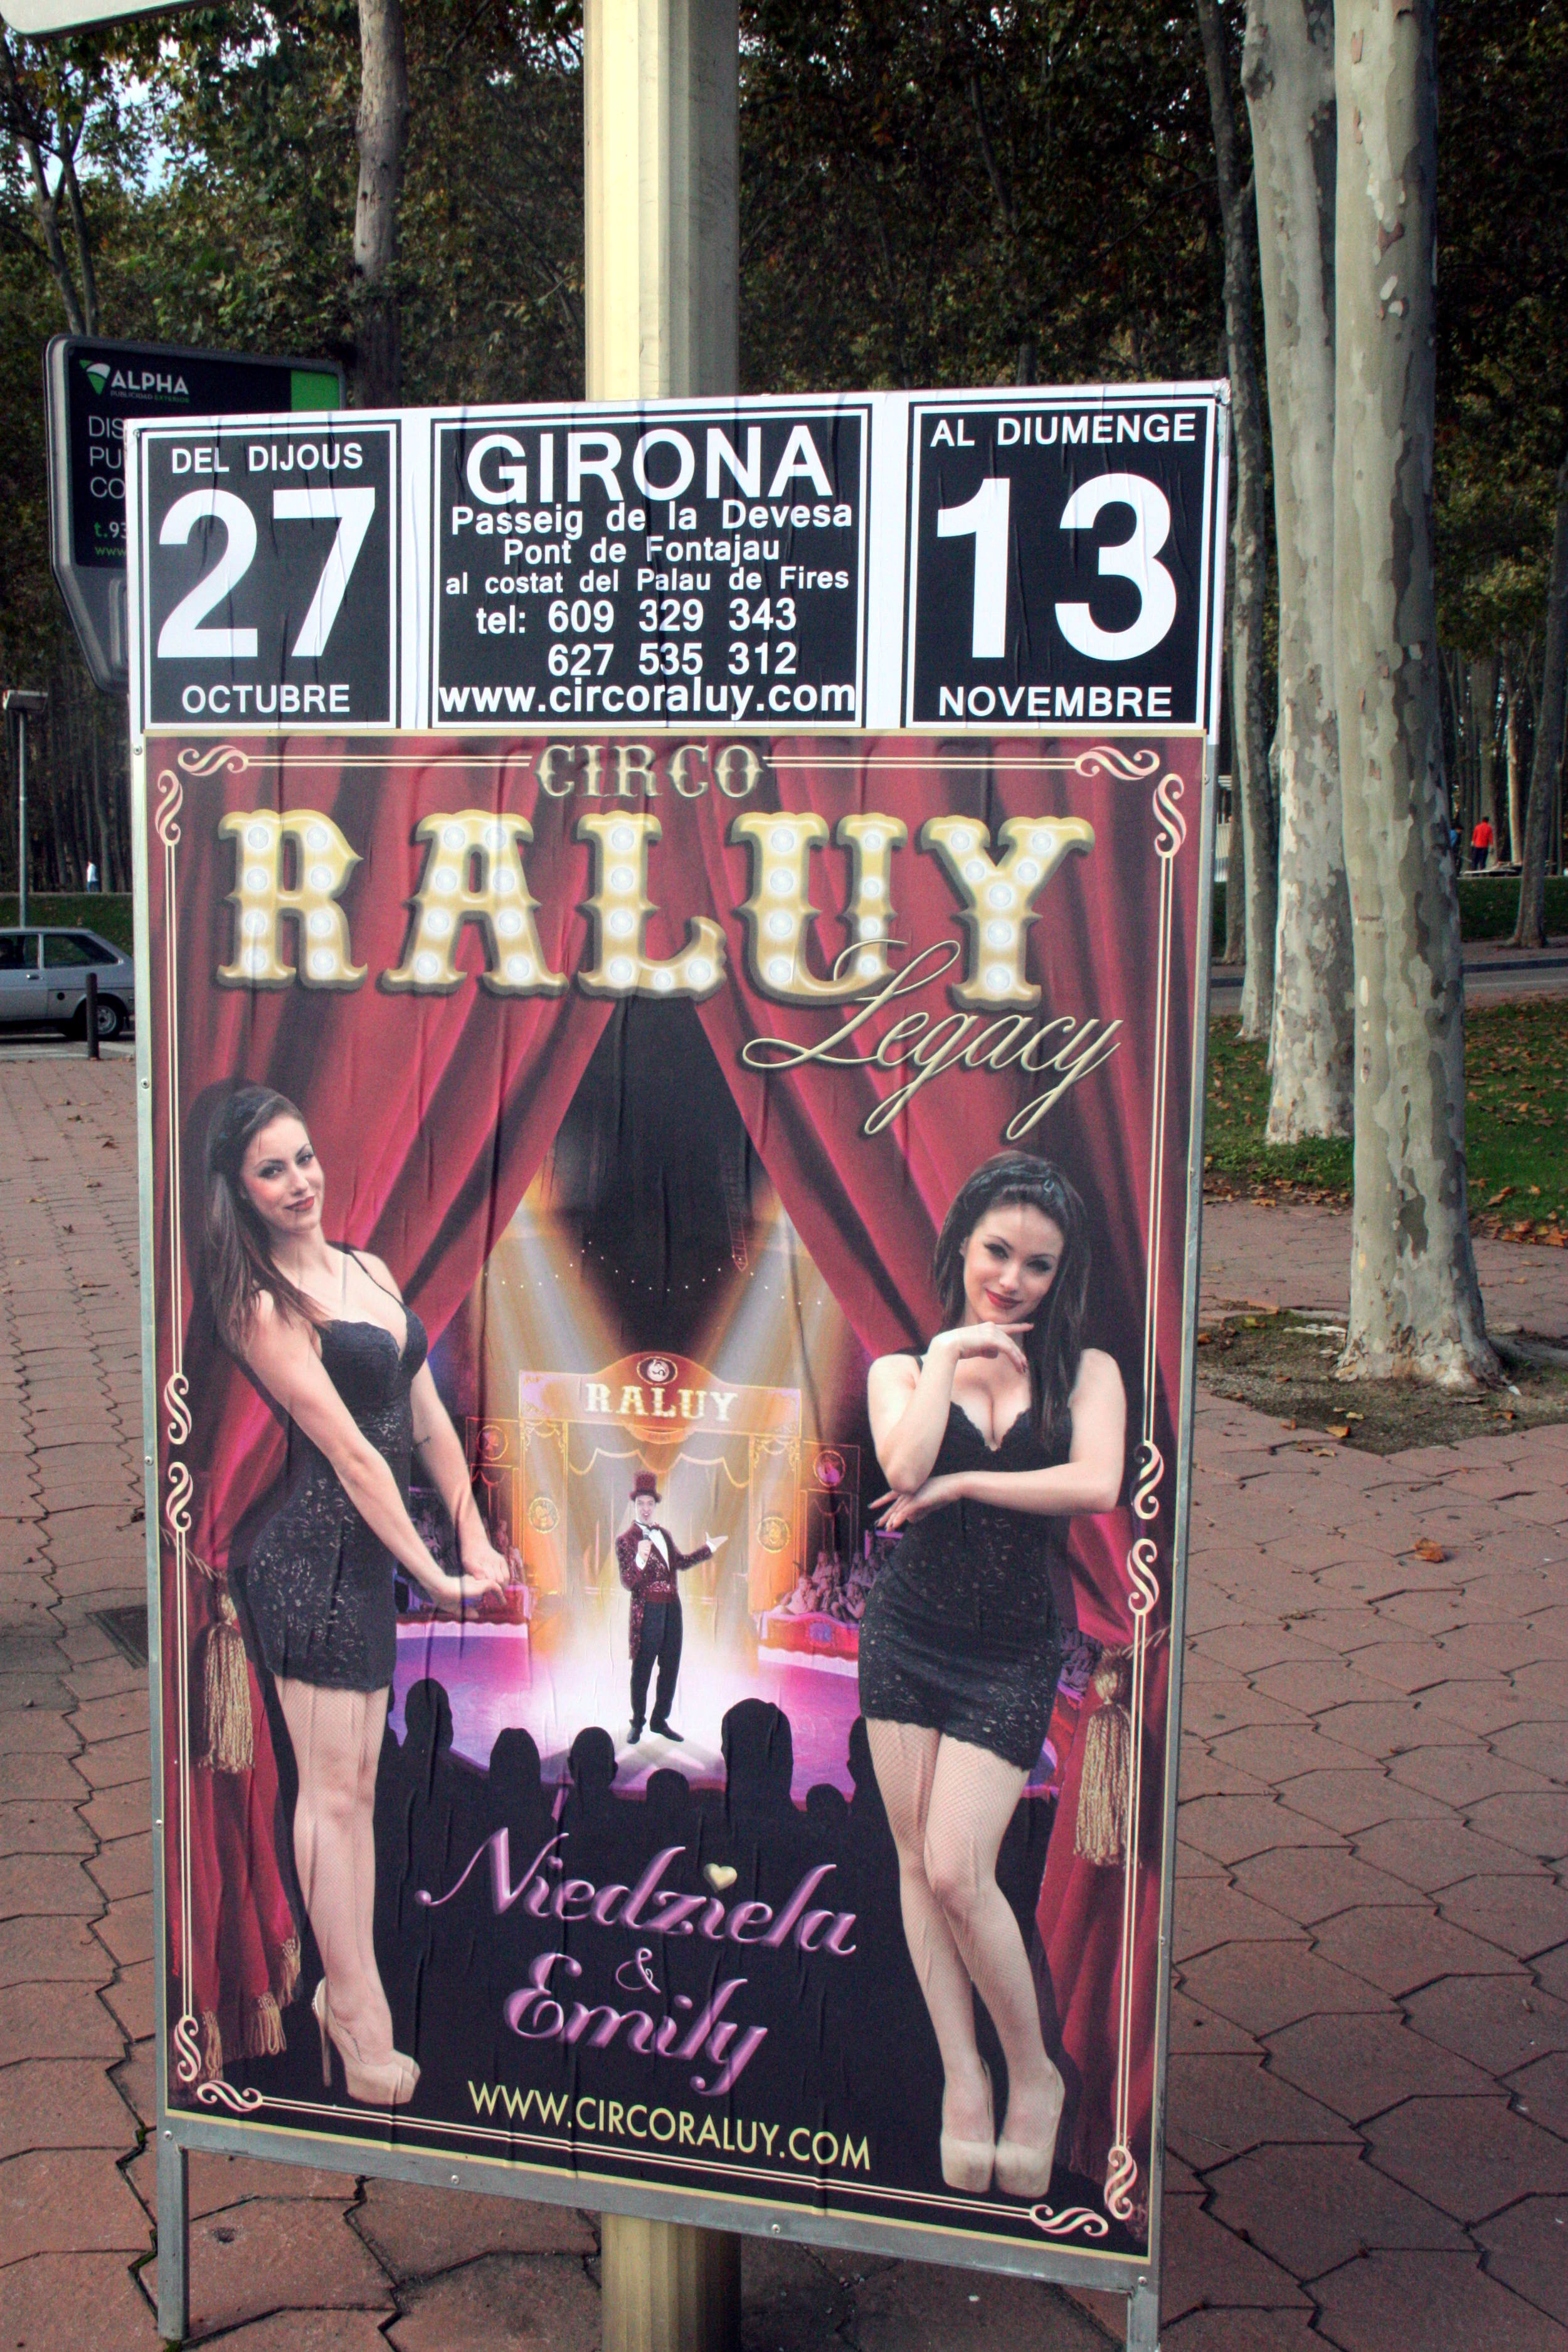 Girona pide al Circo Raluy Legacy que retire un cartel "sexista"